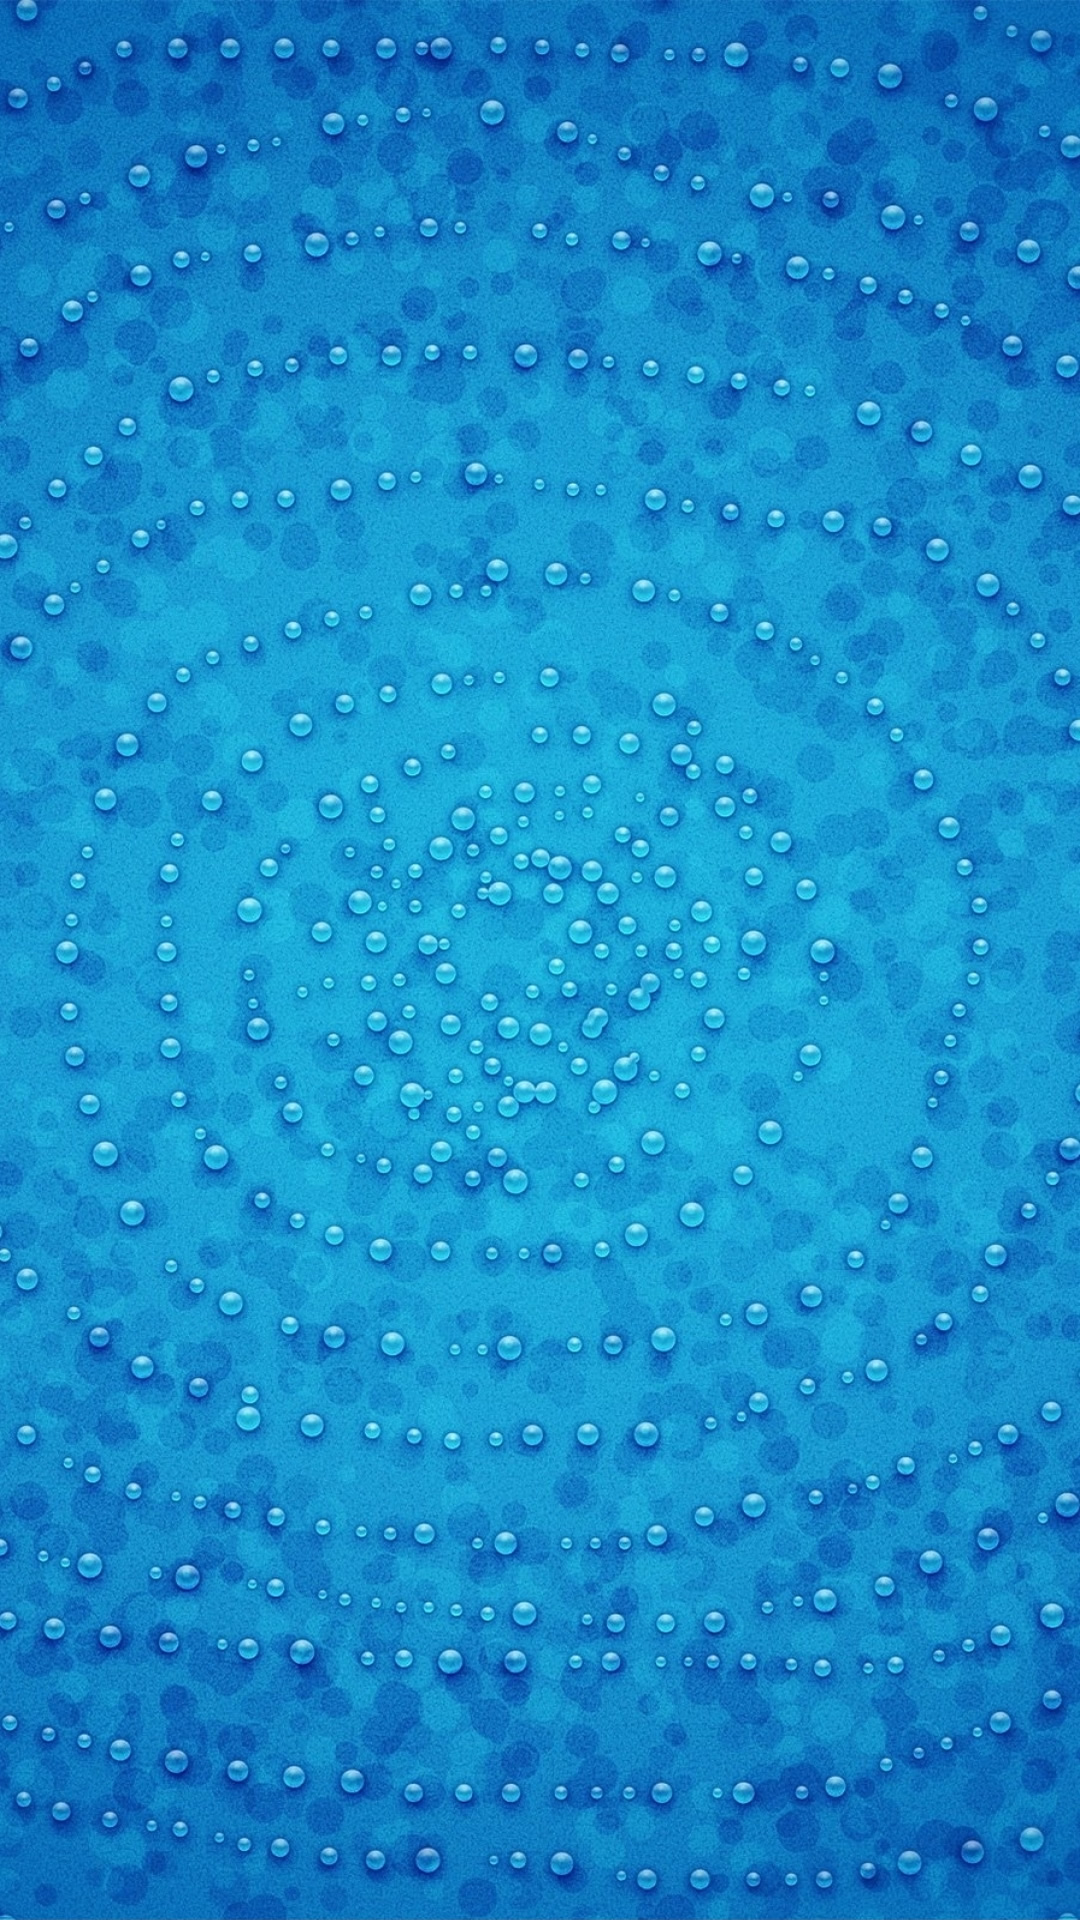 青の抽象的な芸術的なパターンのスマホ壁紙 1080 1920 テクスチャ Iphoneチーズ